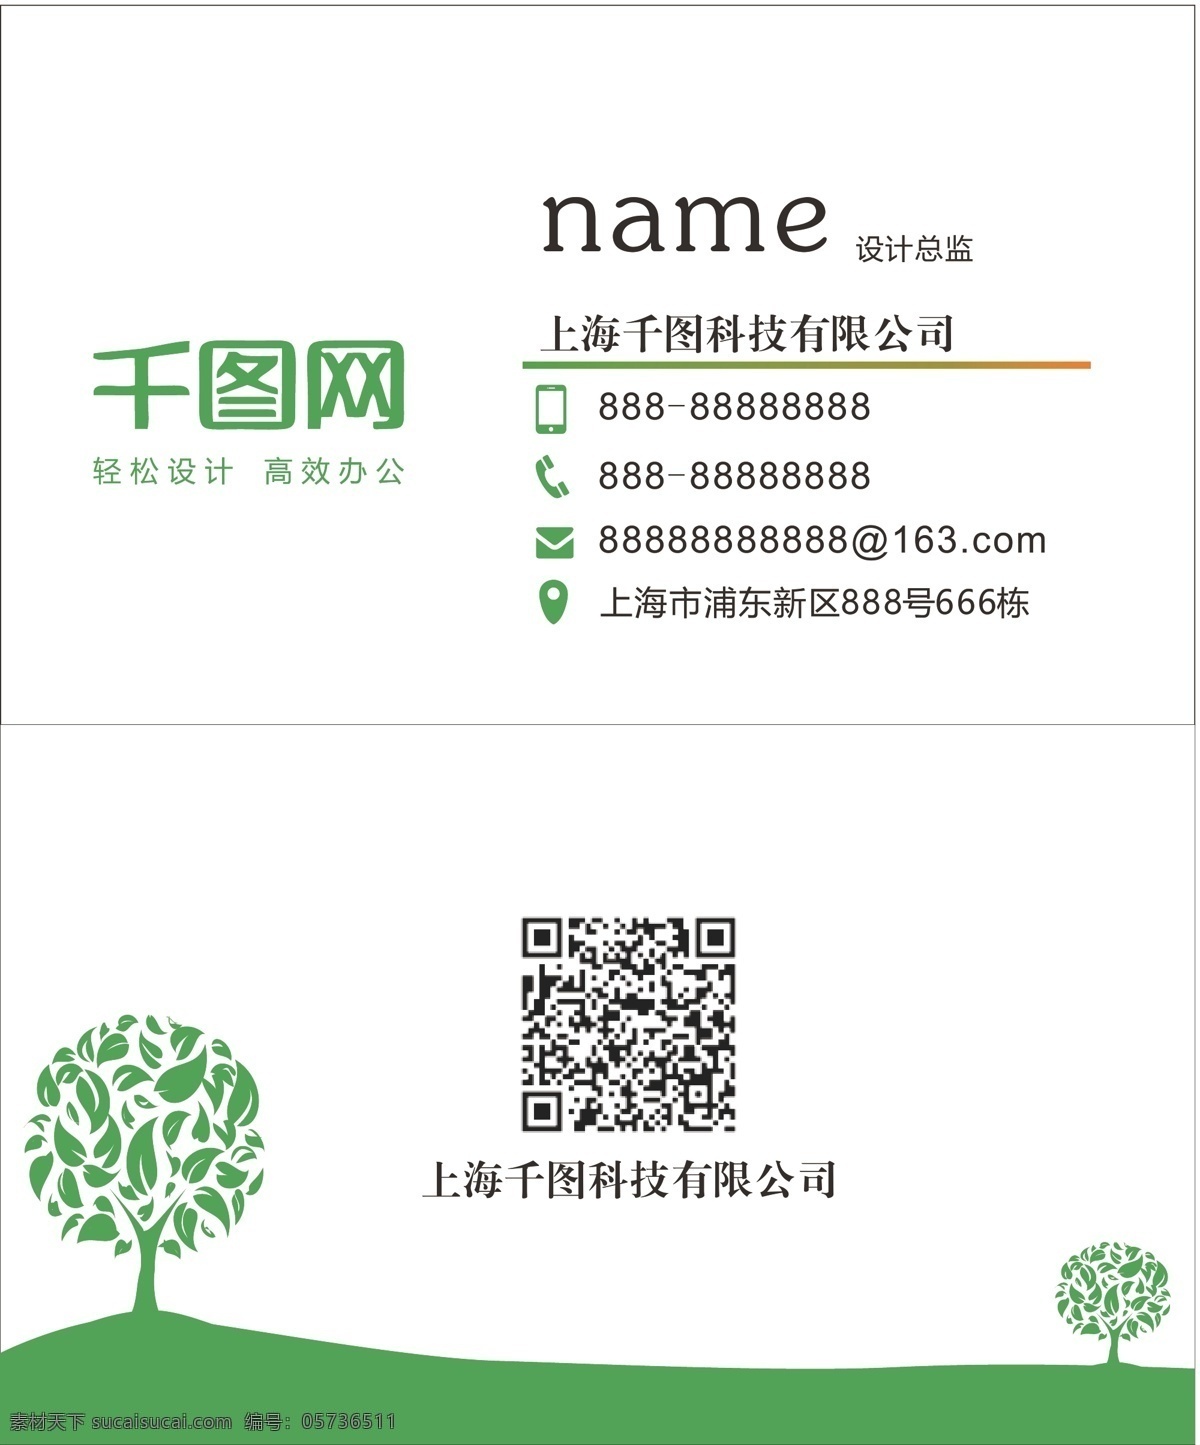 绿色 清新 简约 环保 名片 卡片 清爽 矢量素材